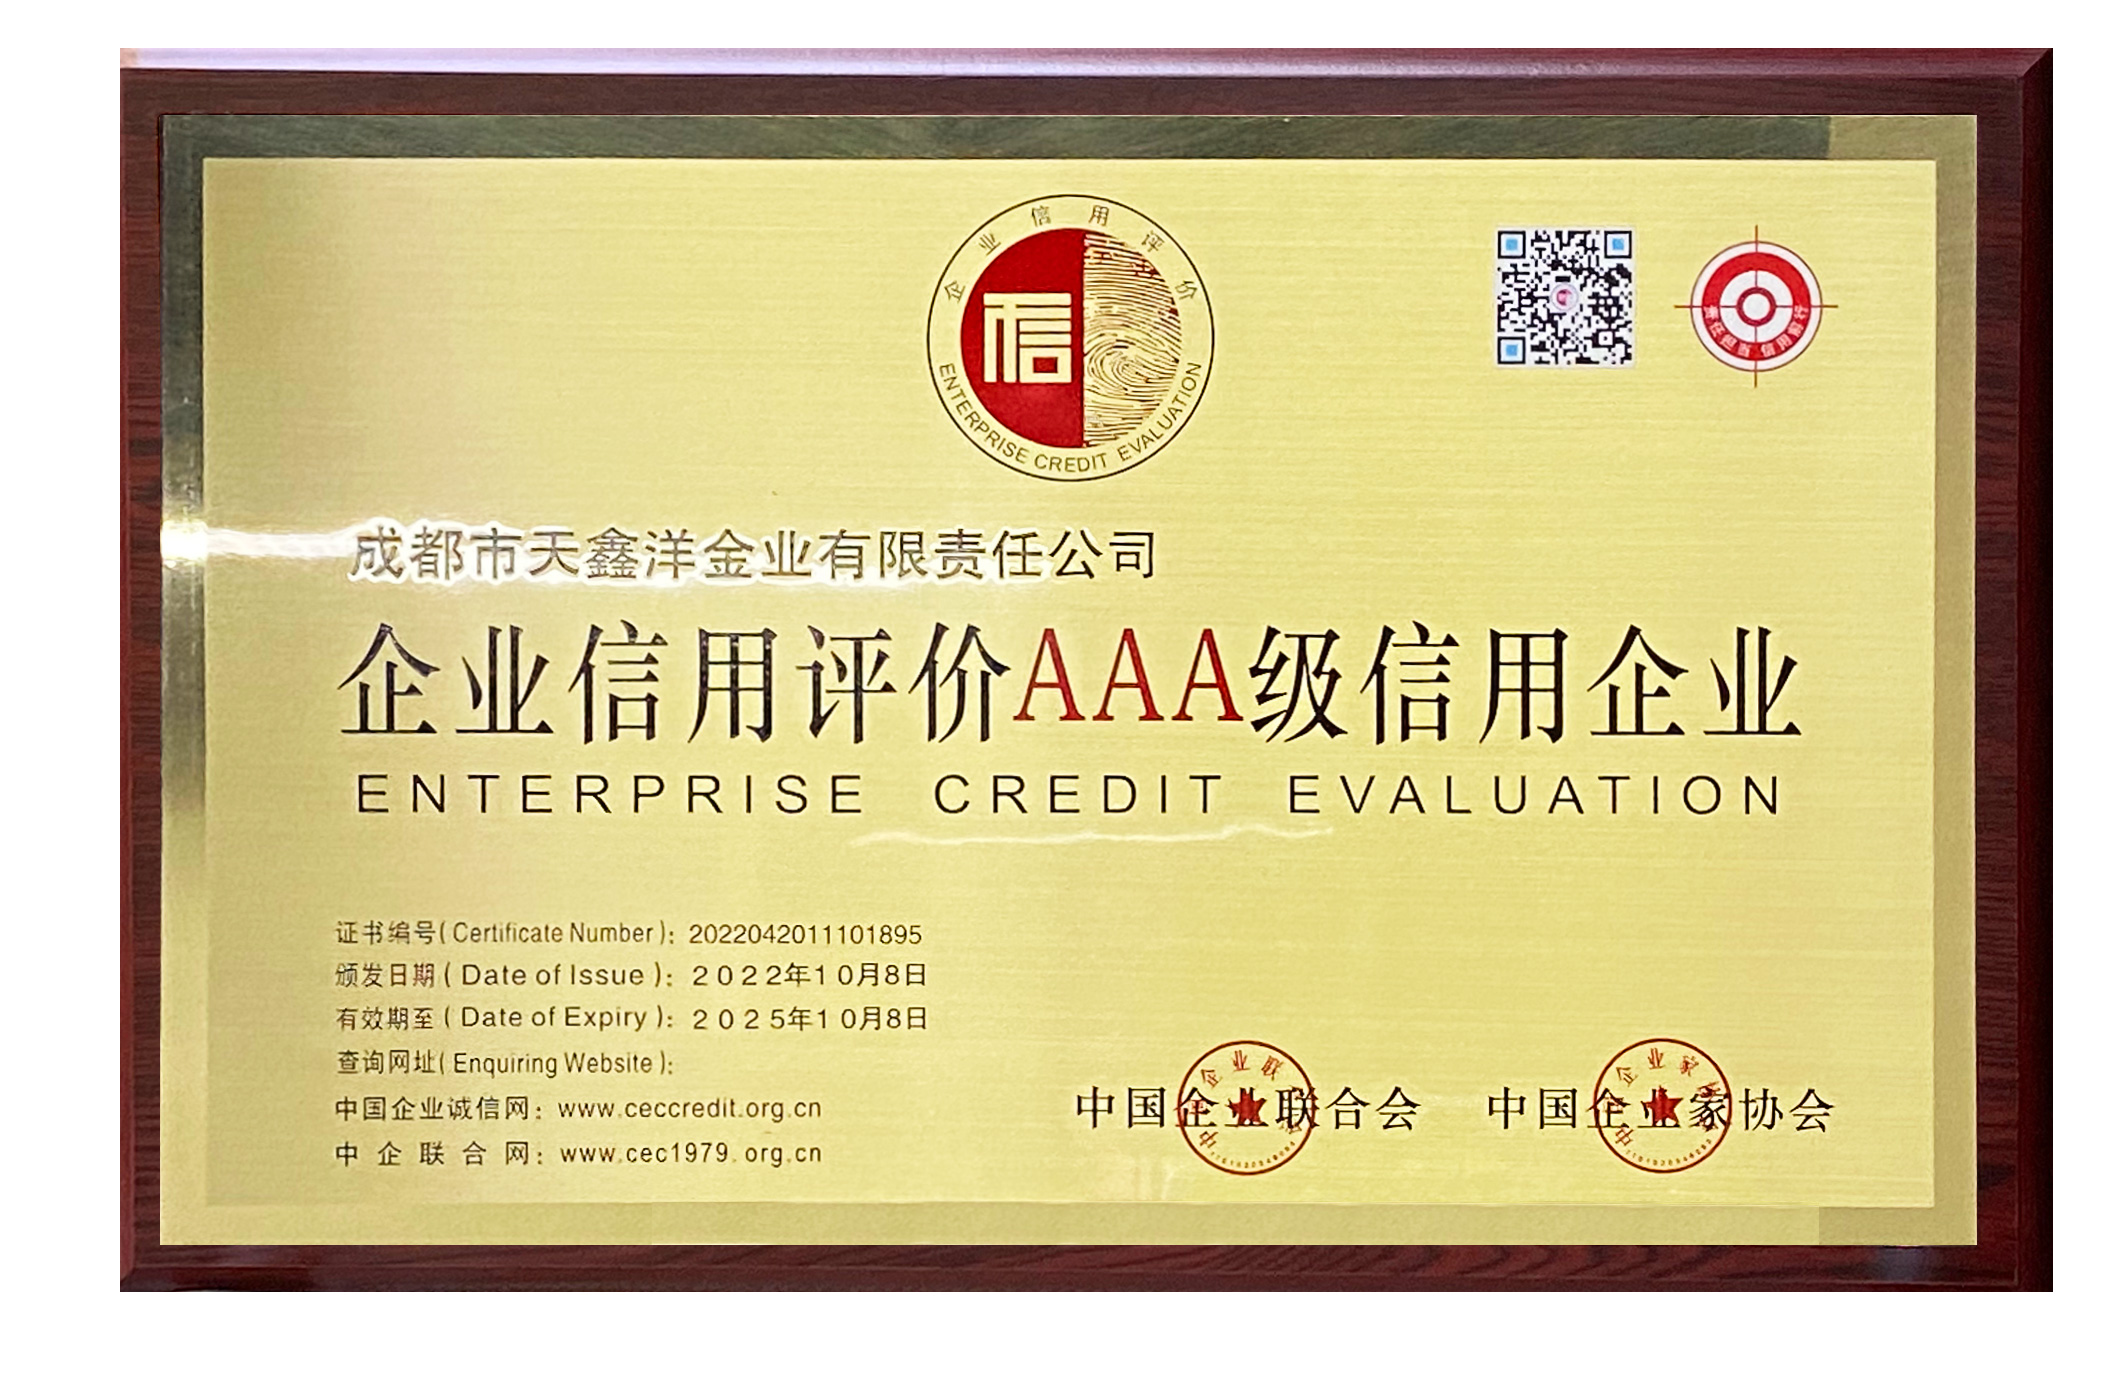 热烈祝贺4166金沙登录金业获评“AAA级信用企业”认证